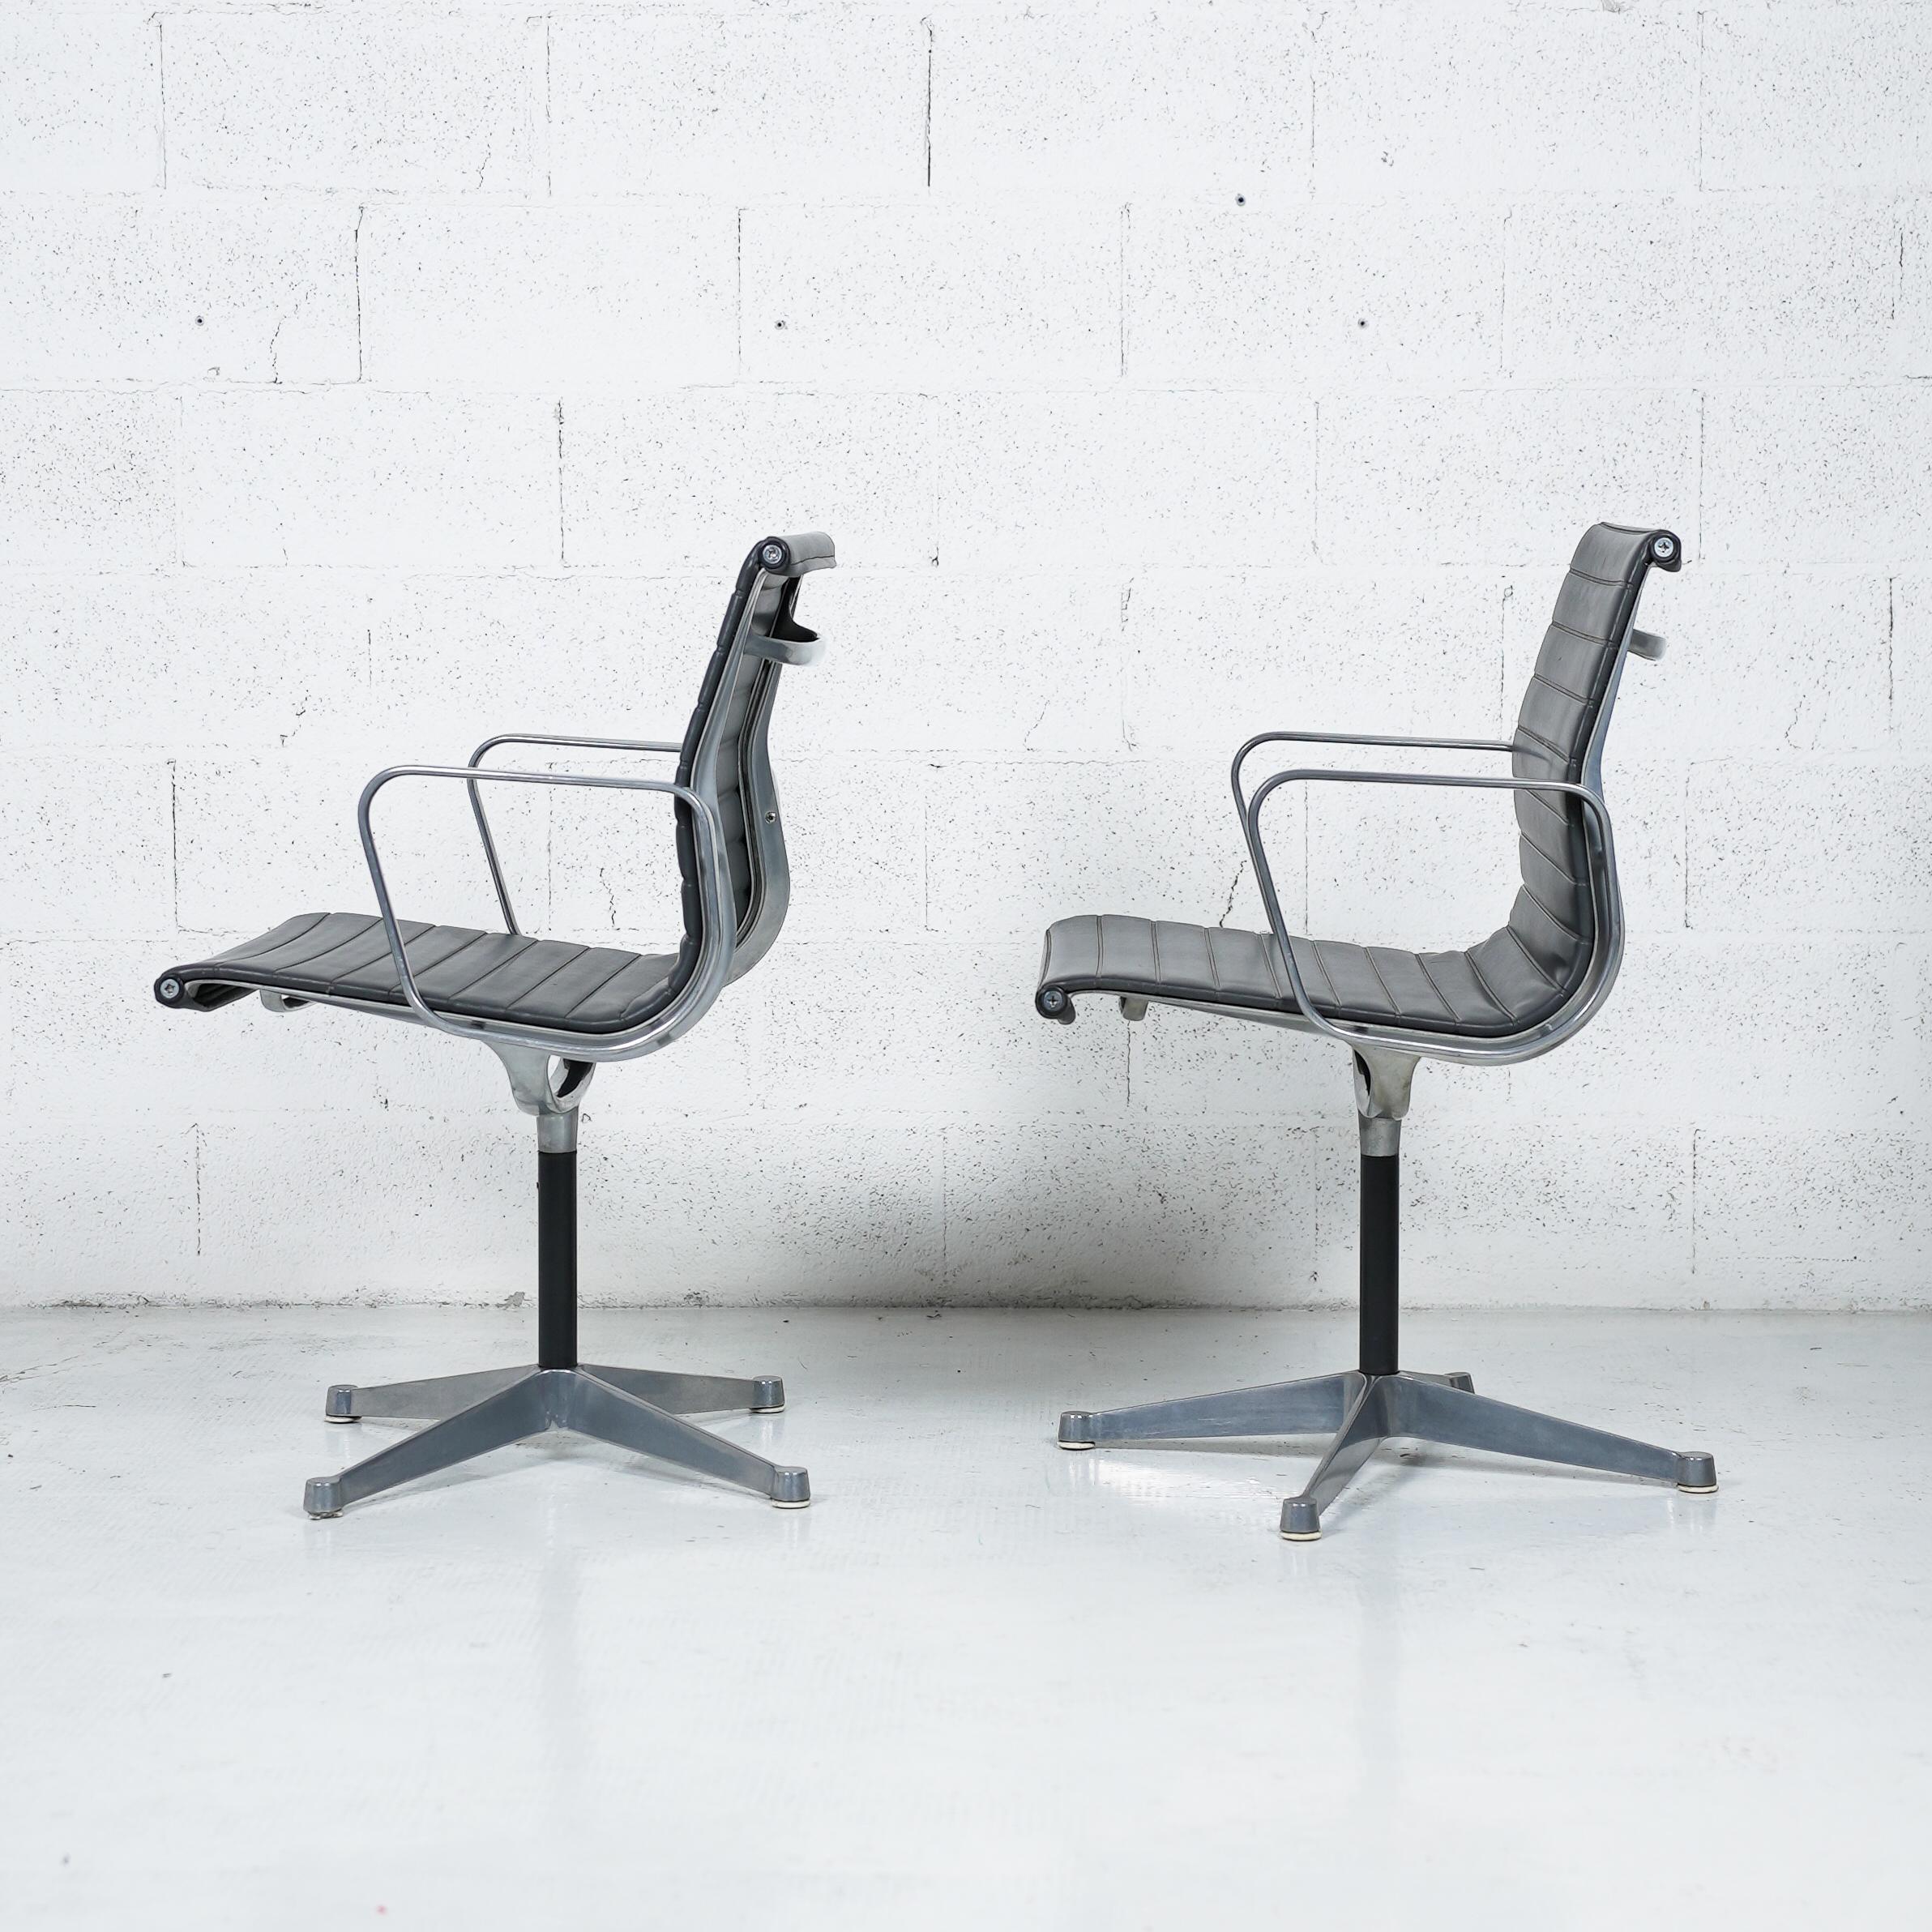 Véritables icônes du design du XXe siècle, les sièges de la série Aluminum Group ont été conçus par Charles et Ray Eames dans les années 1950 et ont été créés pour la première fois en 1958, définissant ce qui est encore aujourd'hui la norme pour les